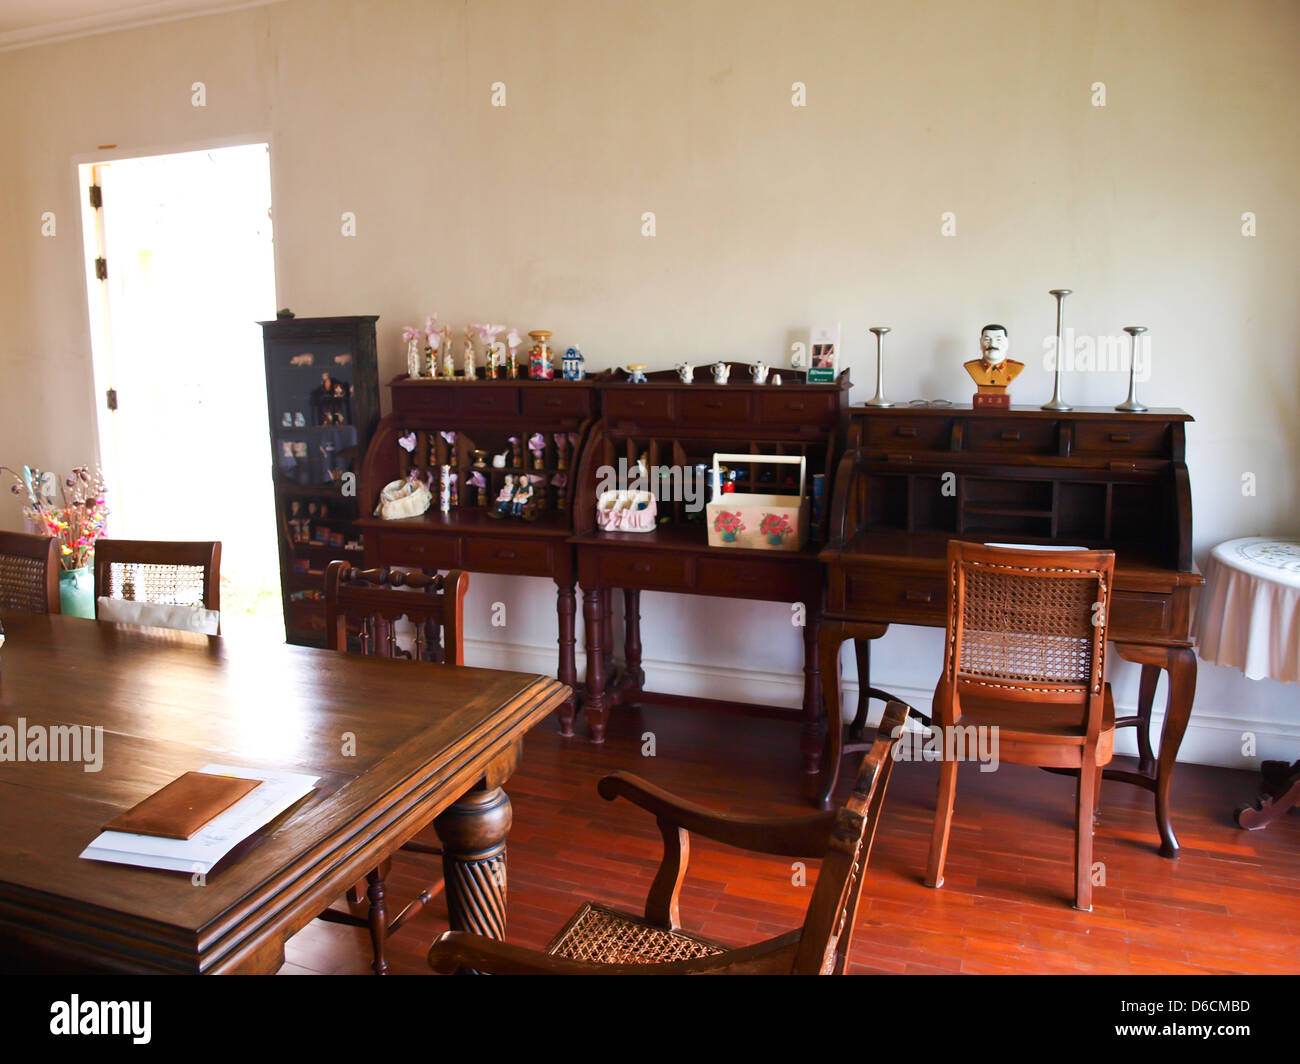 Comedor interior con muebles marrones clásicos y luz natural. Foto de stock